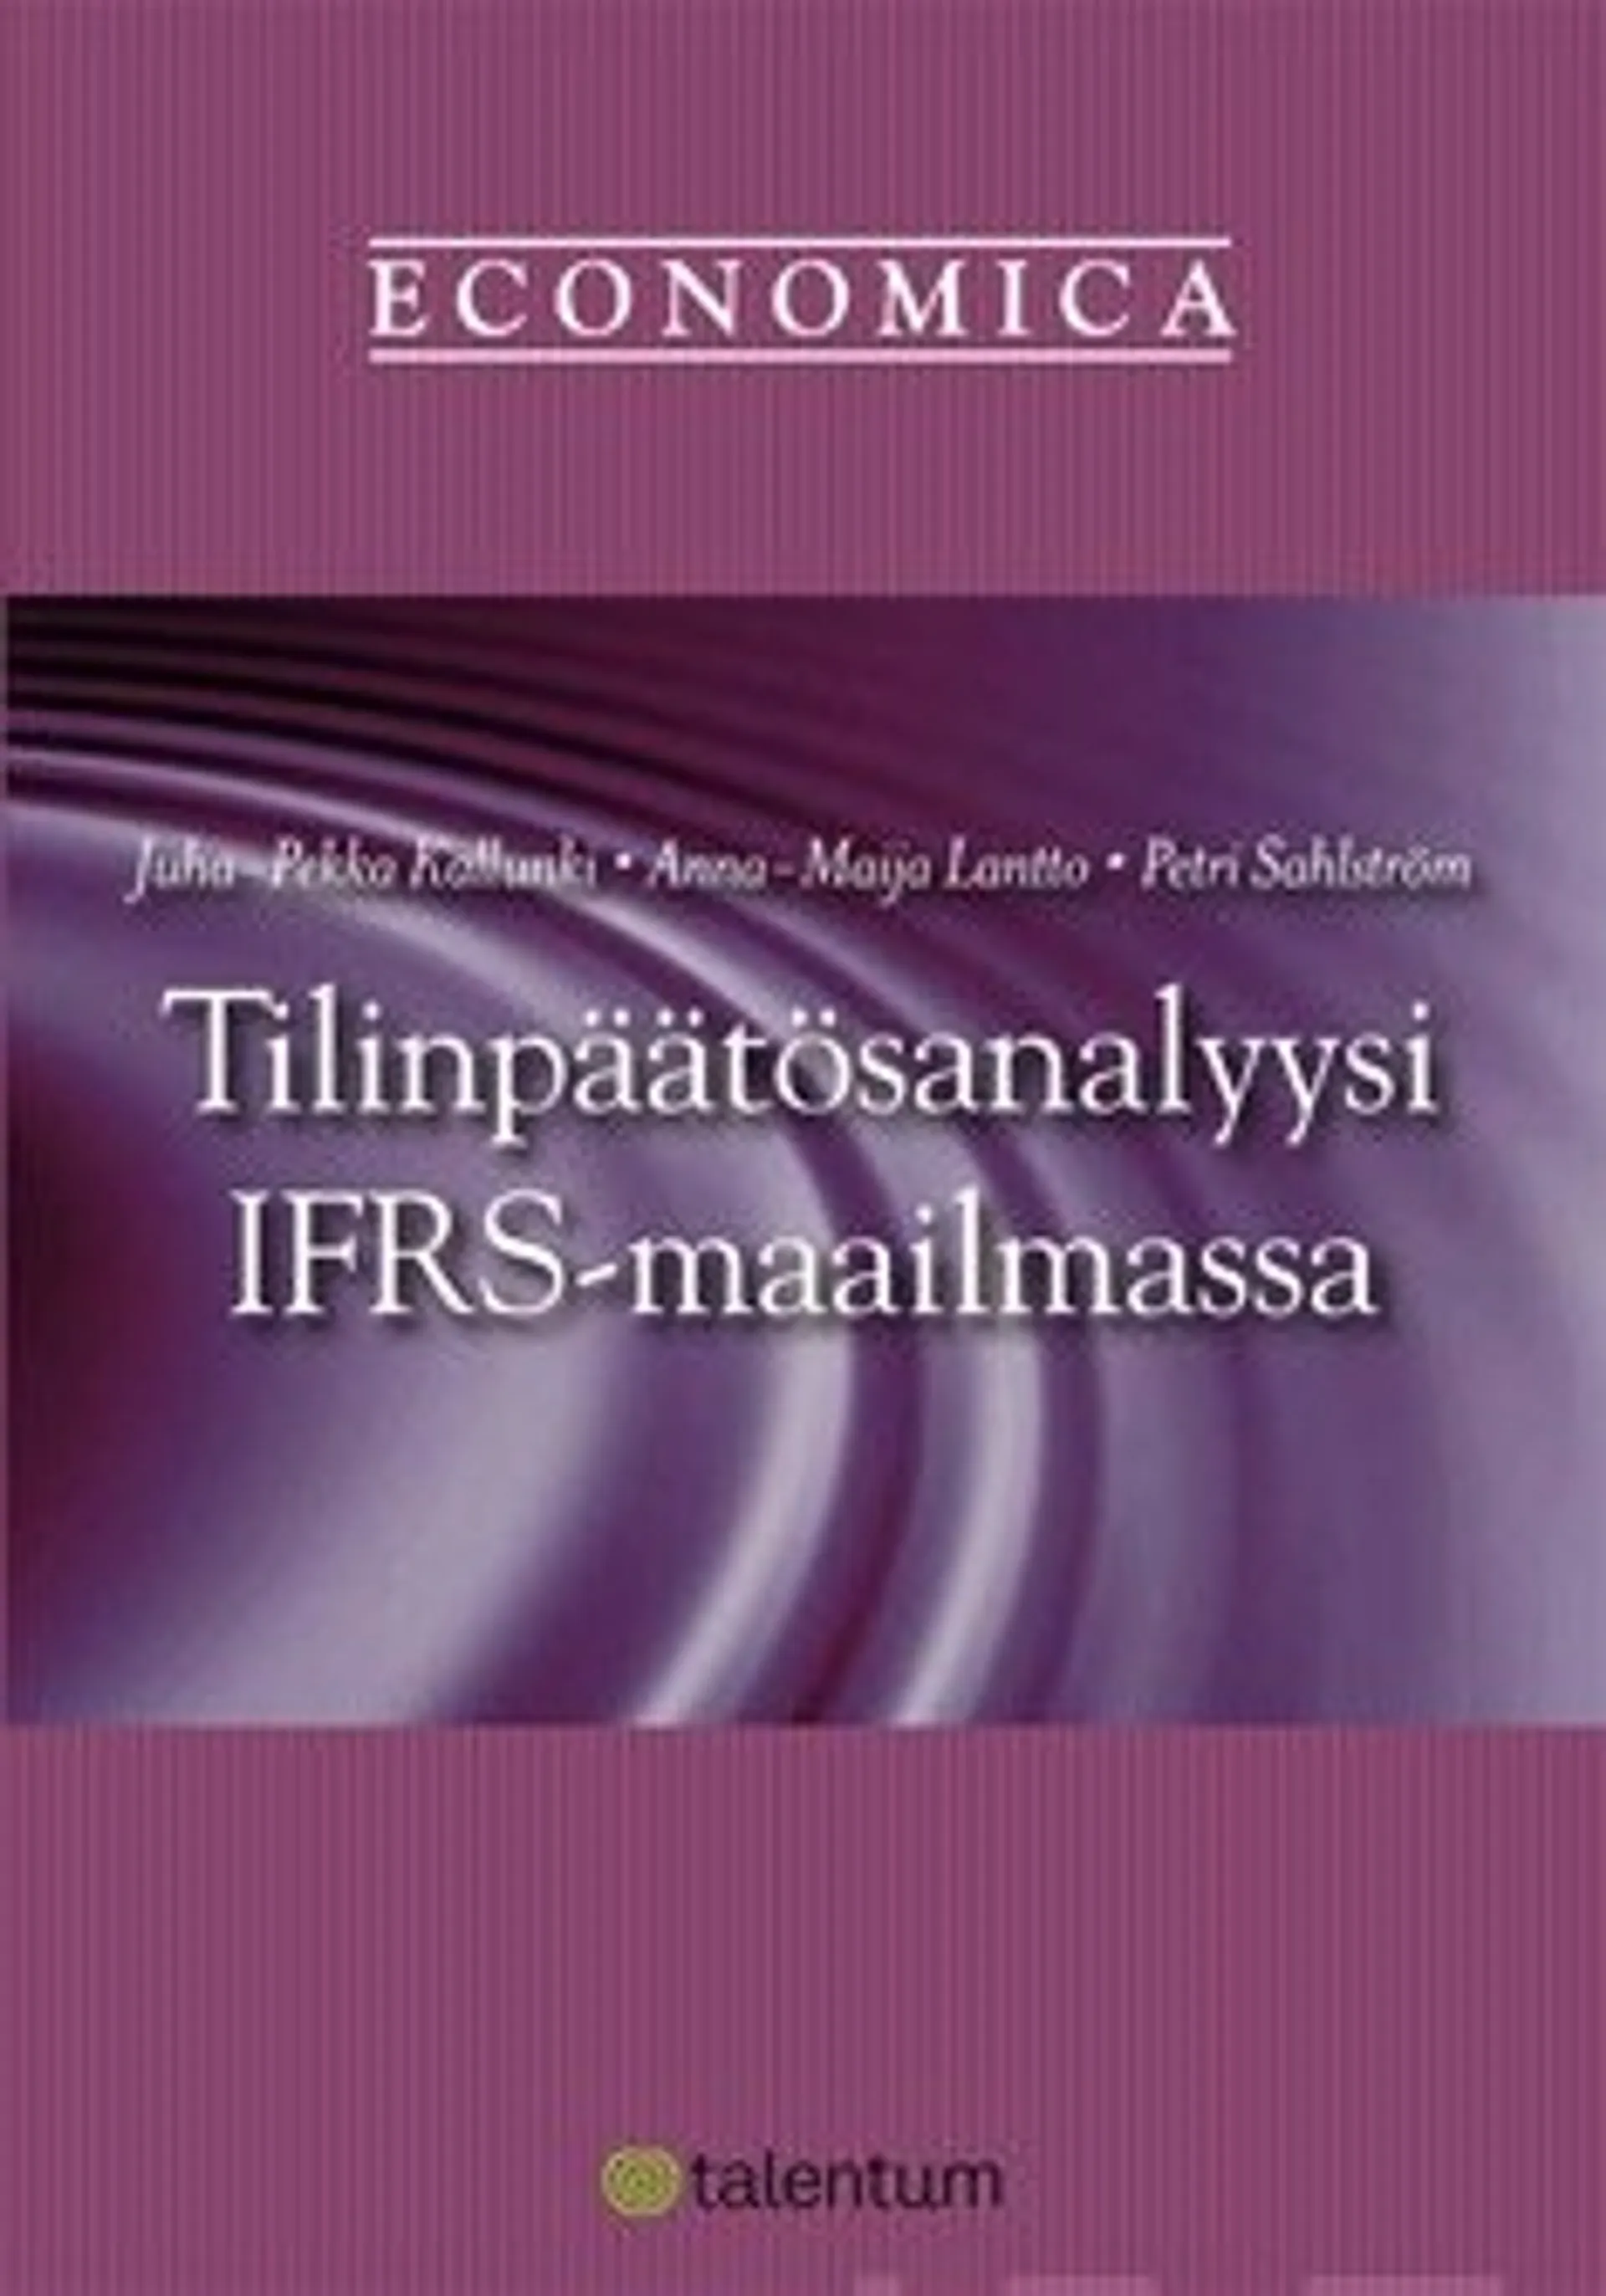 Tilinpäätösanalyysi IFRS-maailmassa